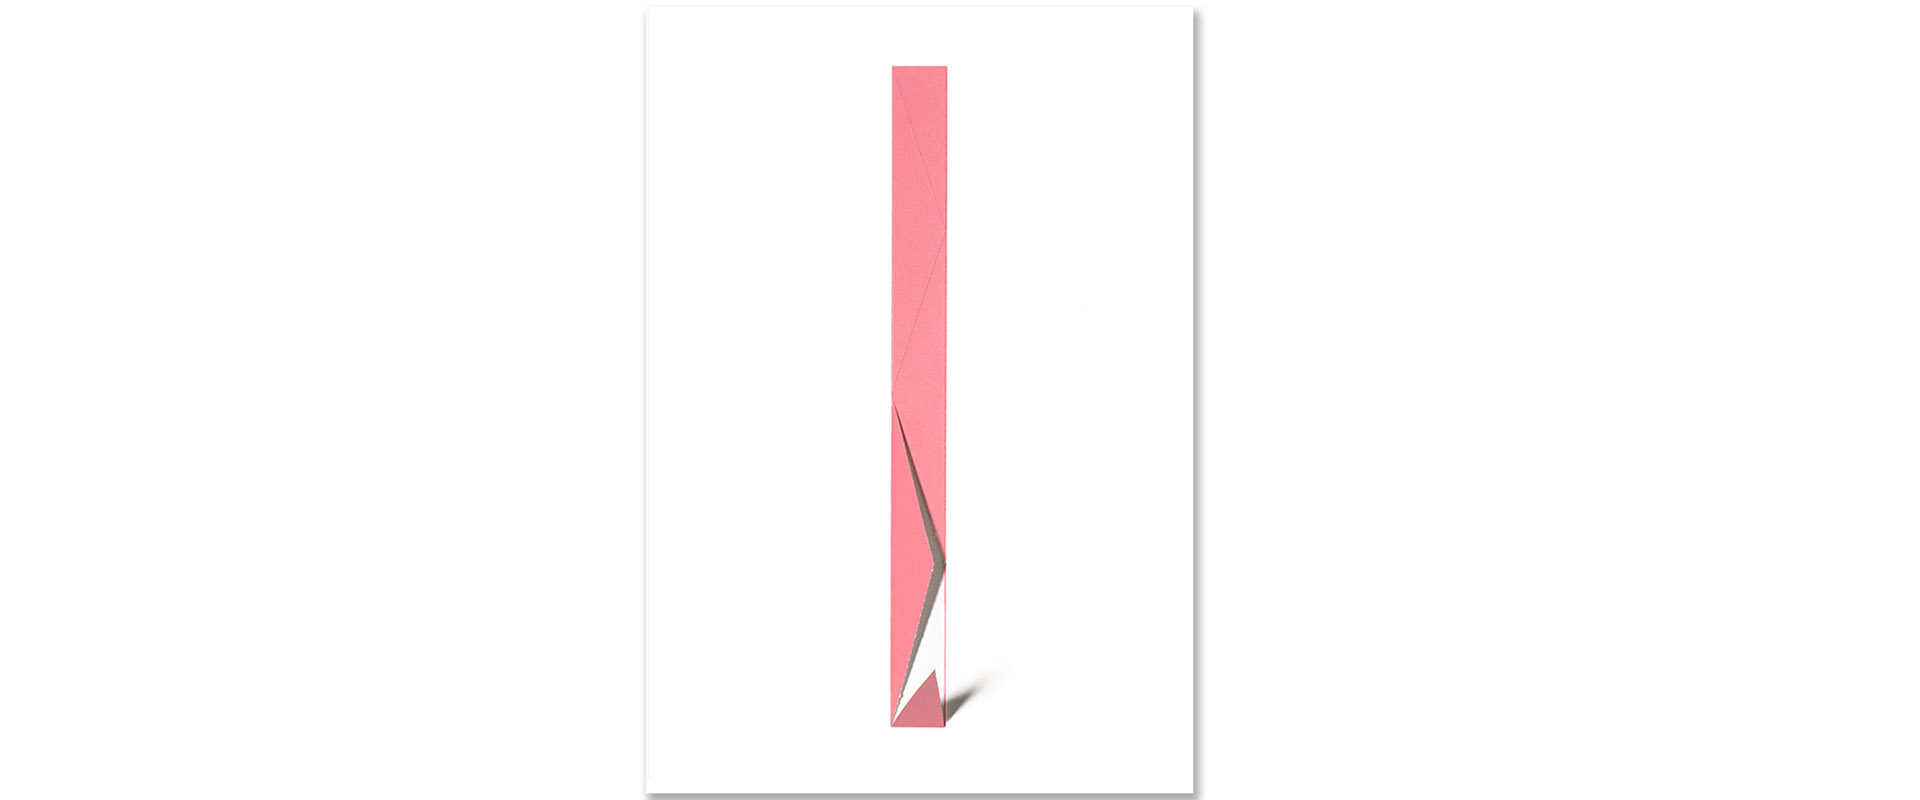 Streifen (rosa) - 2018, Siebdruck auf Papier, perforiert und / oder gefalzt, 70 x 50 cm, Unikatreihe